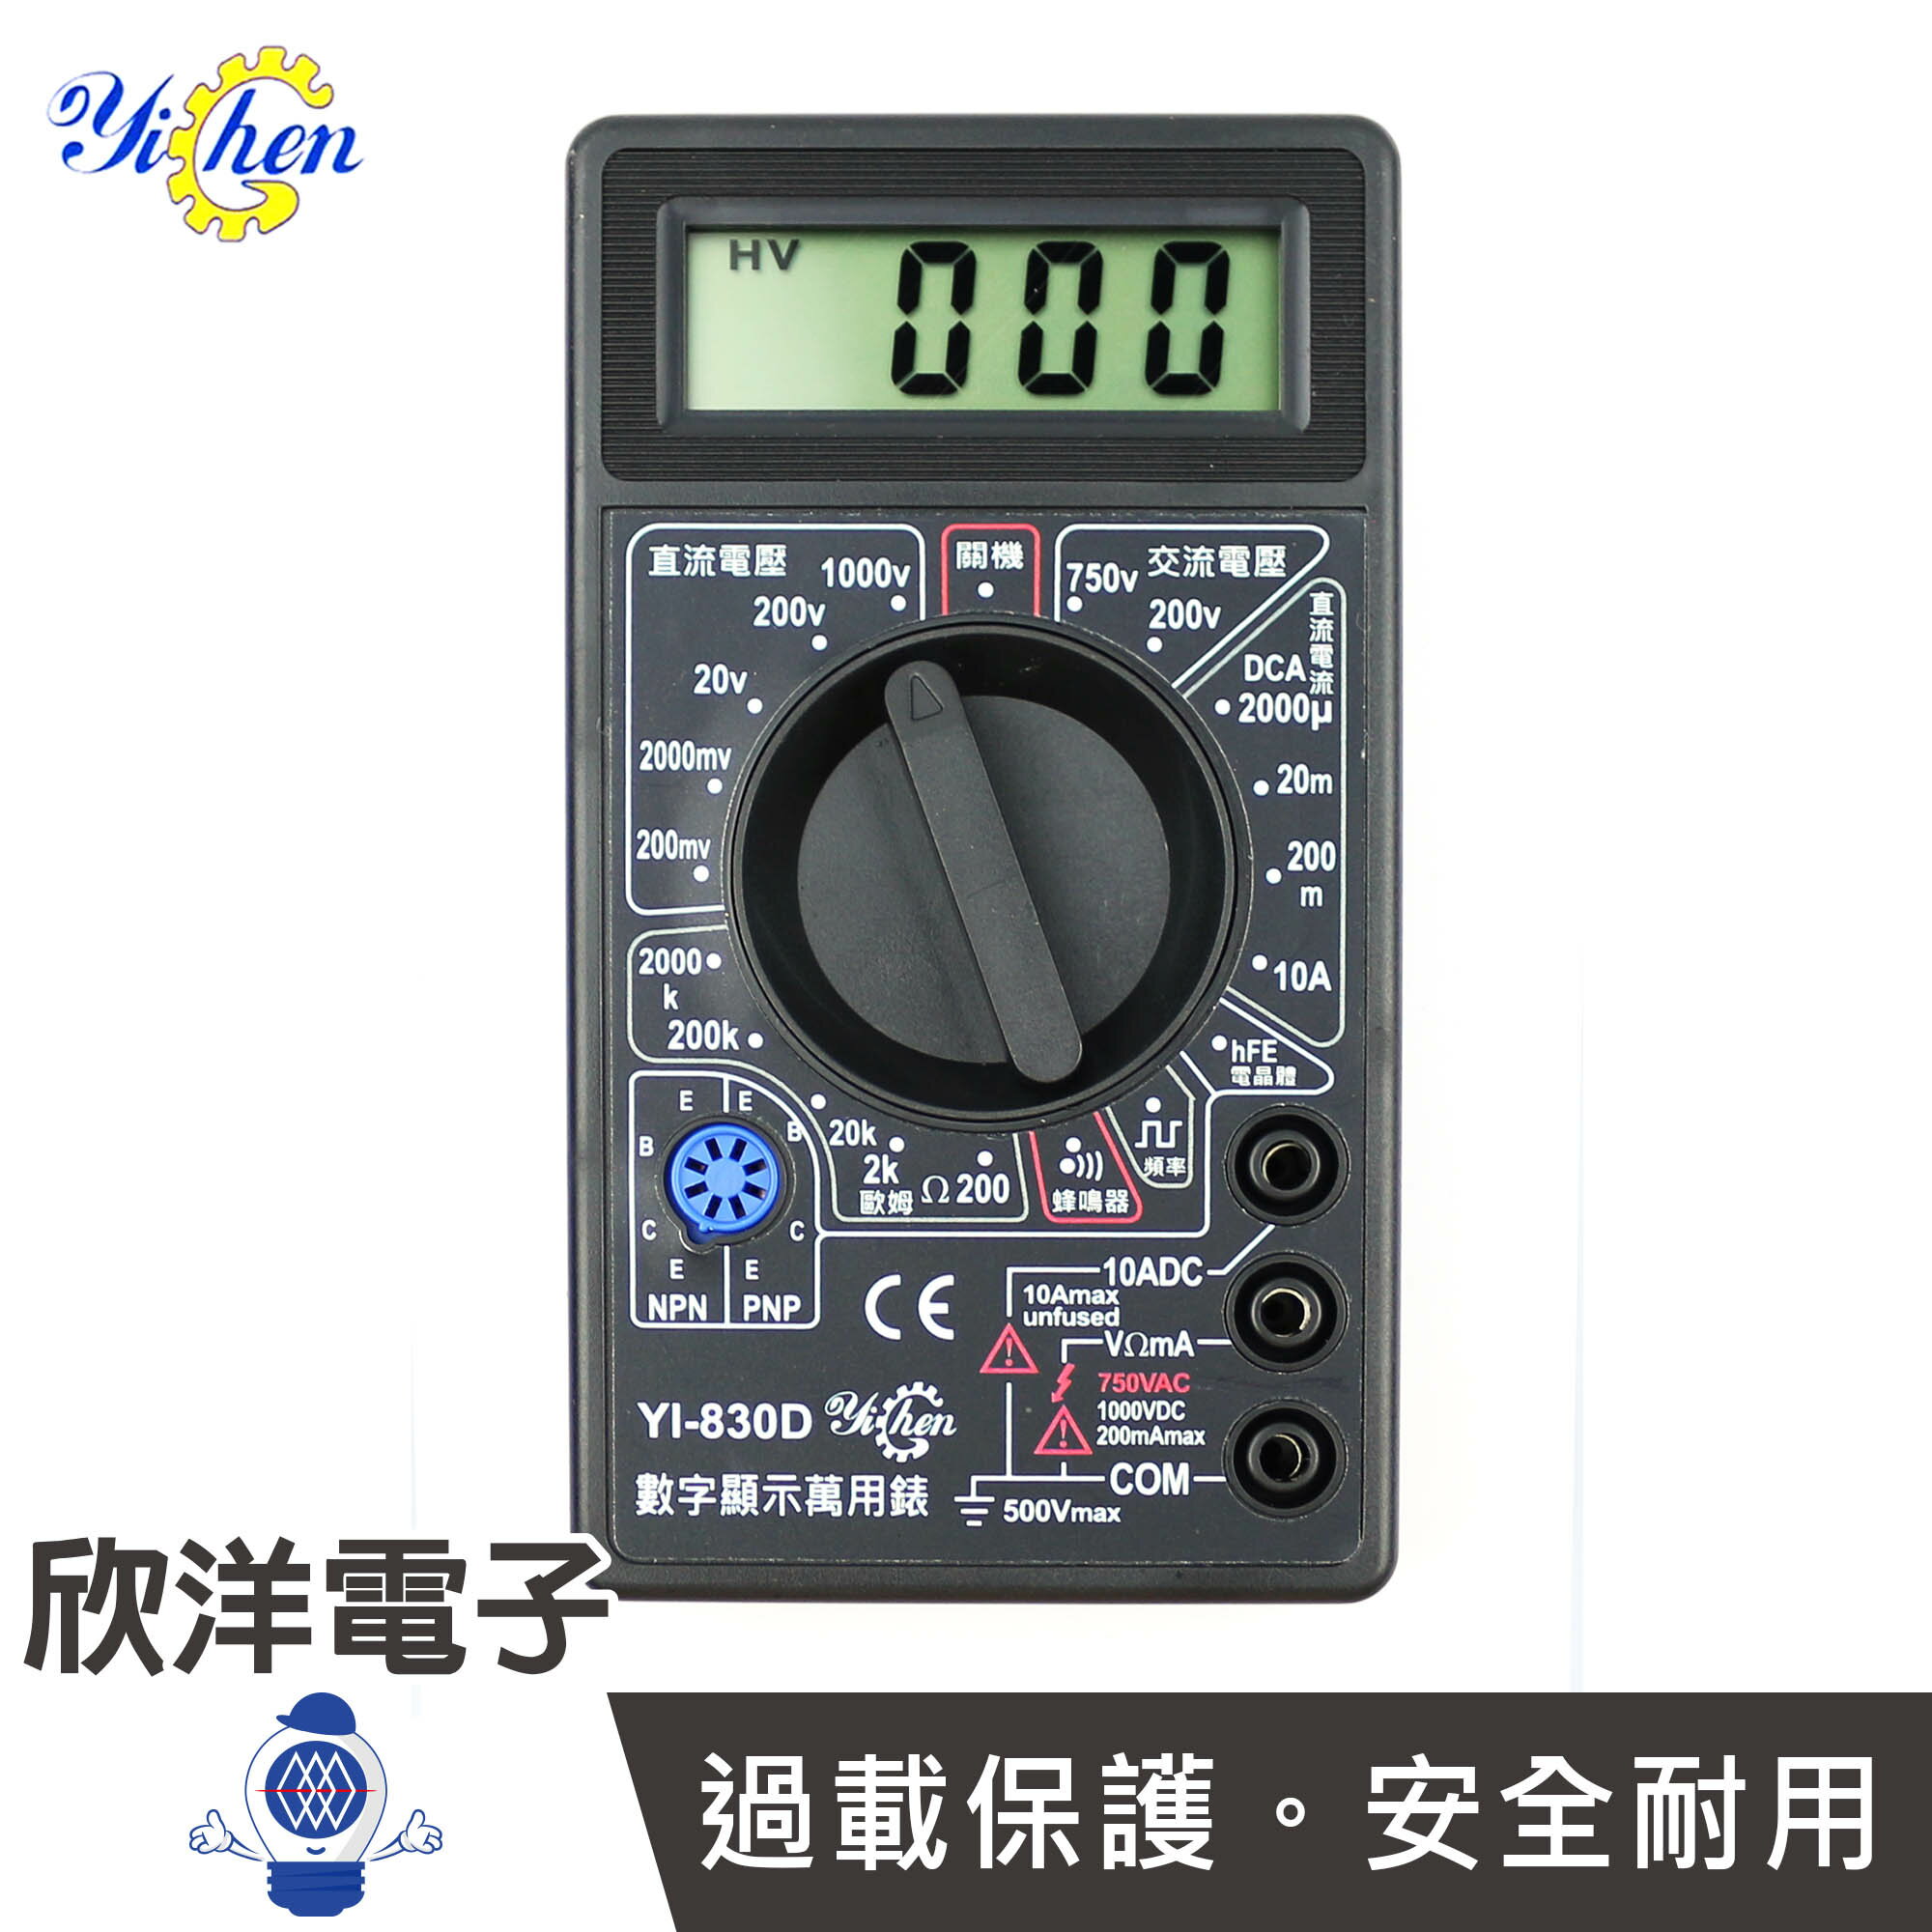 ※ 欣洋電子 ※ YiChen 數字顯示萬用電錶 附測試棒 電池 (YI-830D) 交直流電壓、電流、電阻、三極管